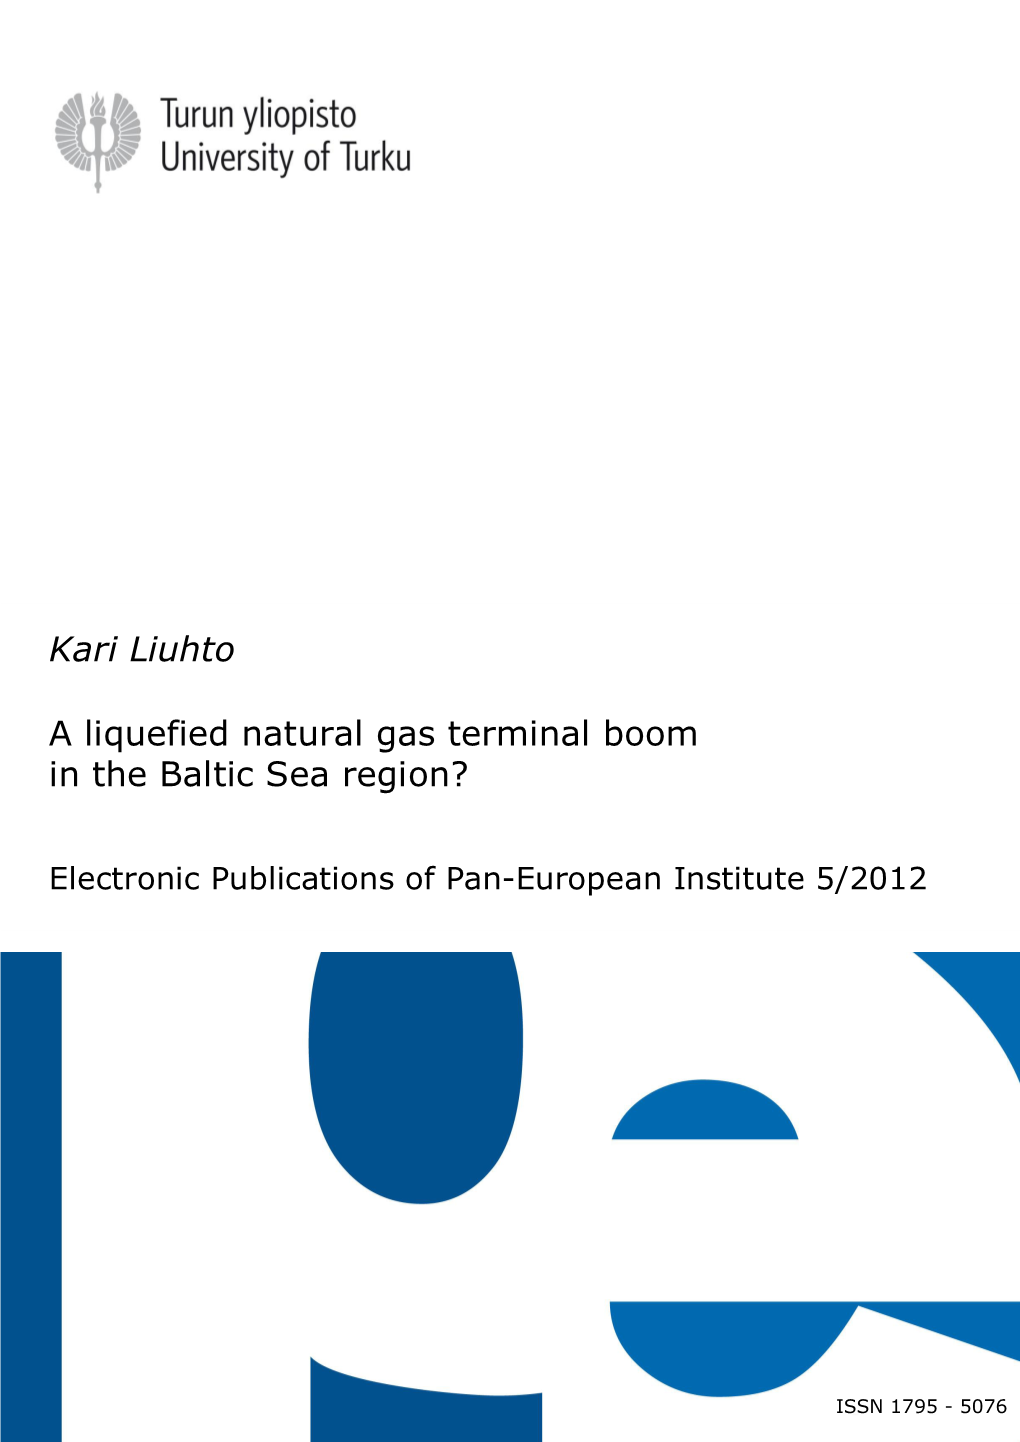 A Liquefied Natural Gas Terminal Boom in the Baltic Sea Region? Kari Liuhto